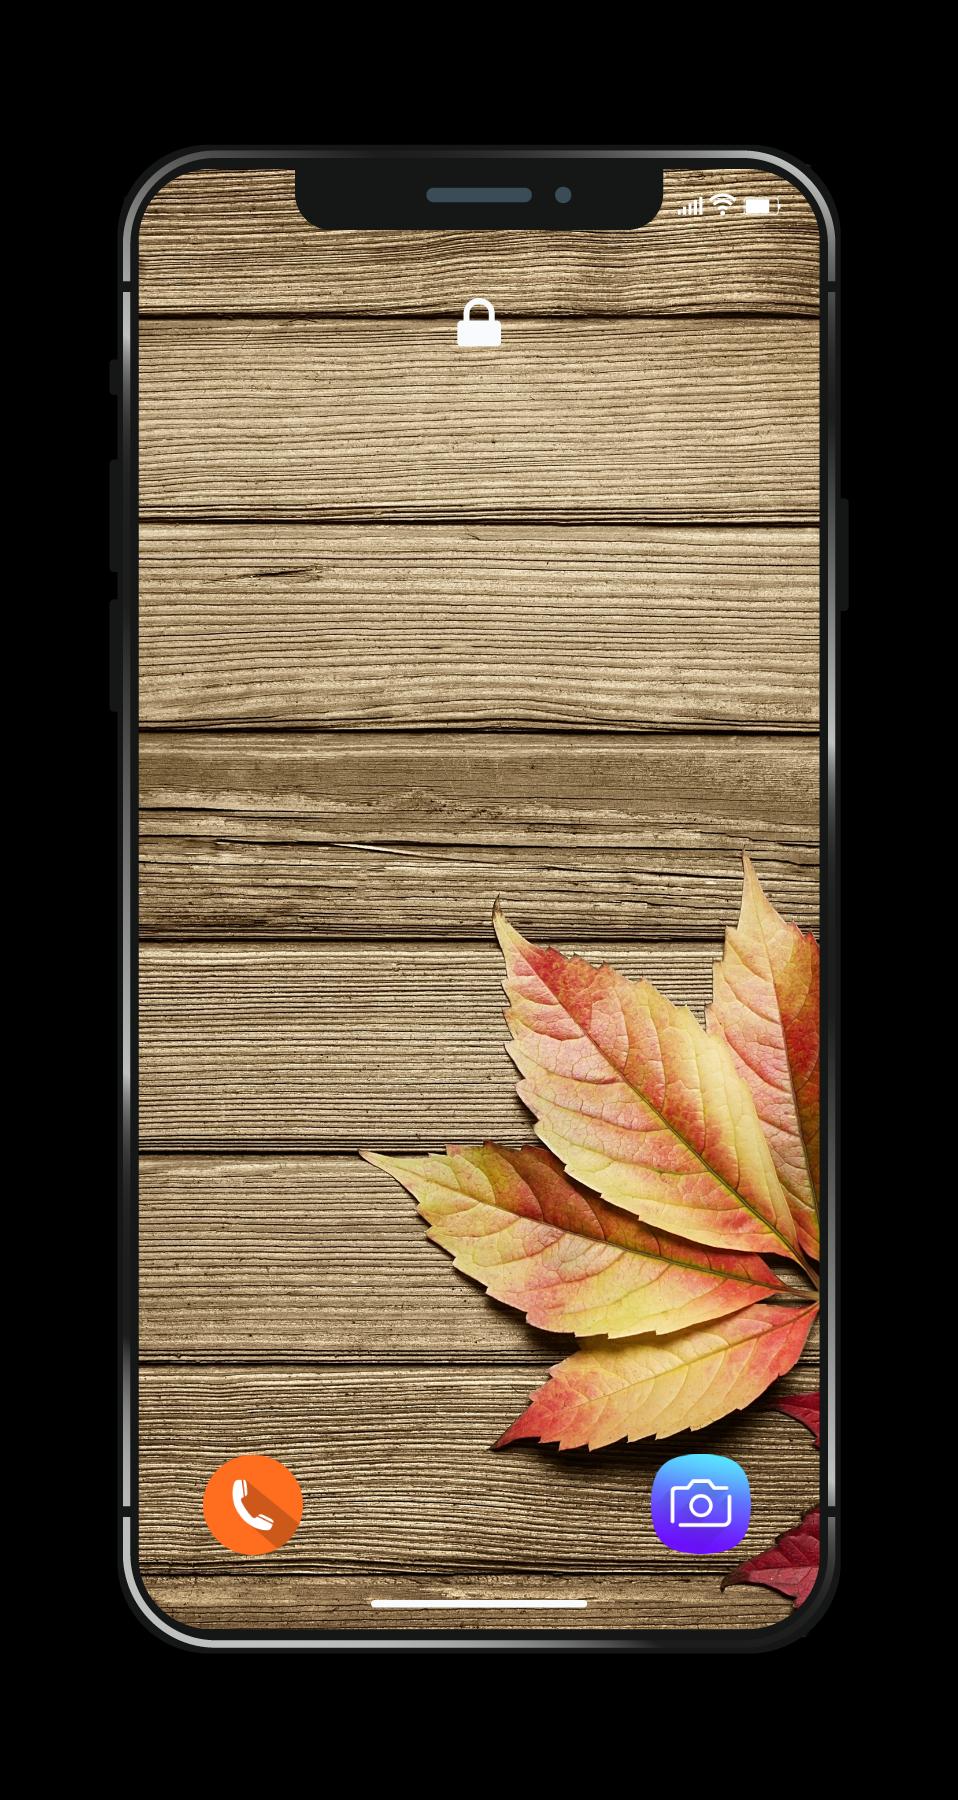 Hình nền gỗ là lựa chọn hoàn hảo cho những ai yêu thích phong cách tự nhiên và gần gũi với thiên nhiên. Trang web của chúng tôi đem đến cho bạn những hình nền độc đáo, được thiết kế tinh tế và đầy tinh thần sáng tạo - để bạn trang trí cho chiếc smartphone của mình thêm phần ấn tượng và độc đáo.